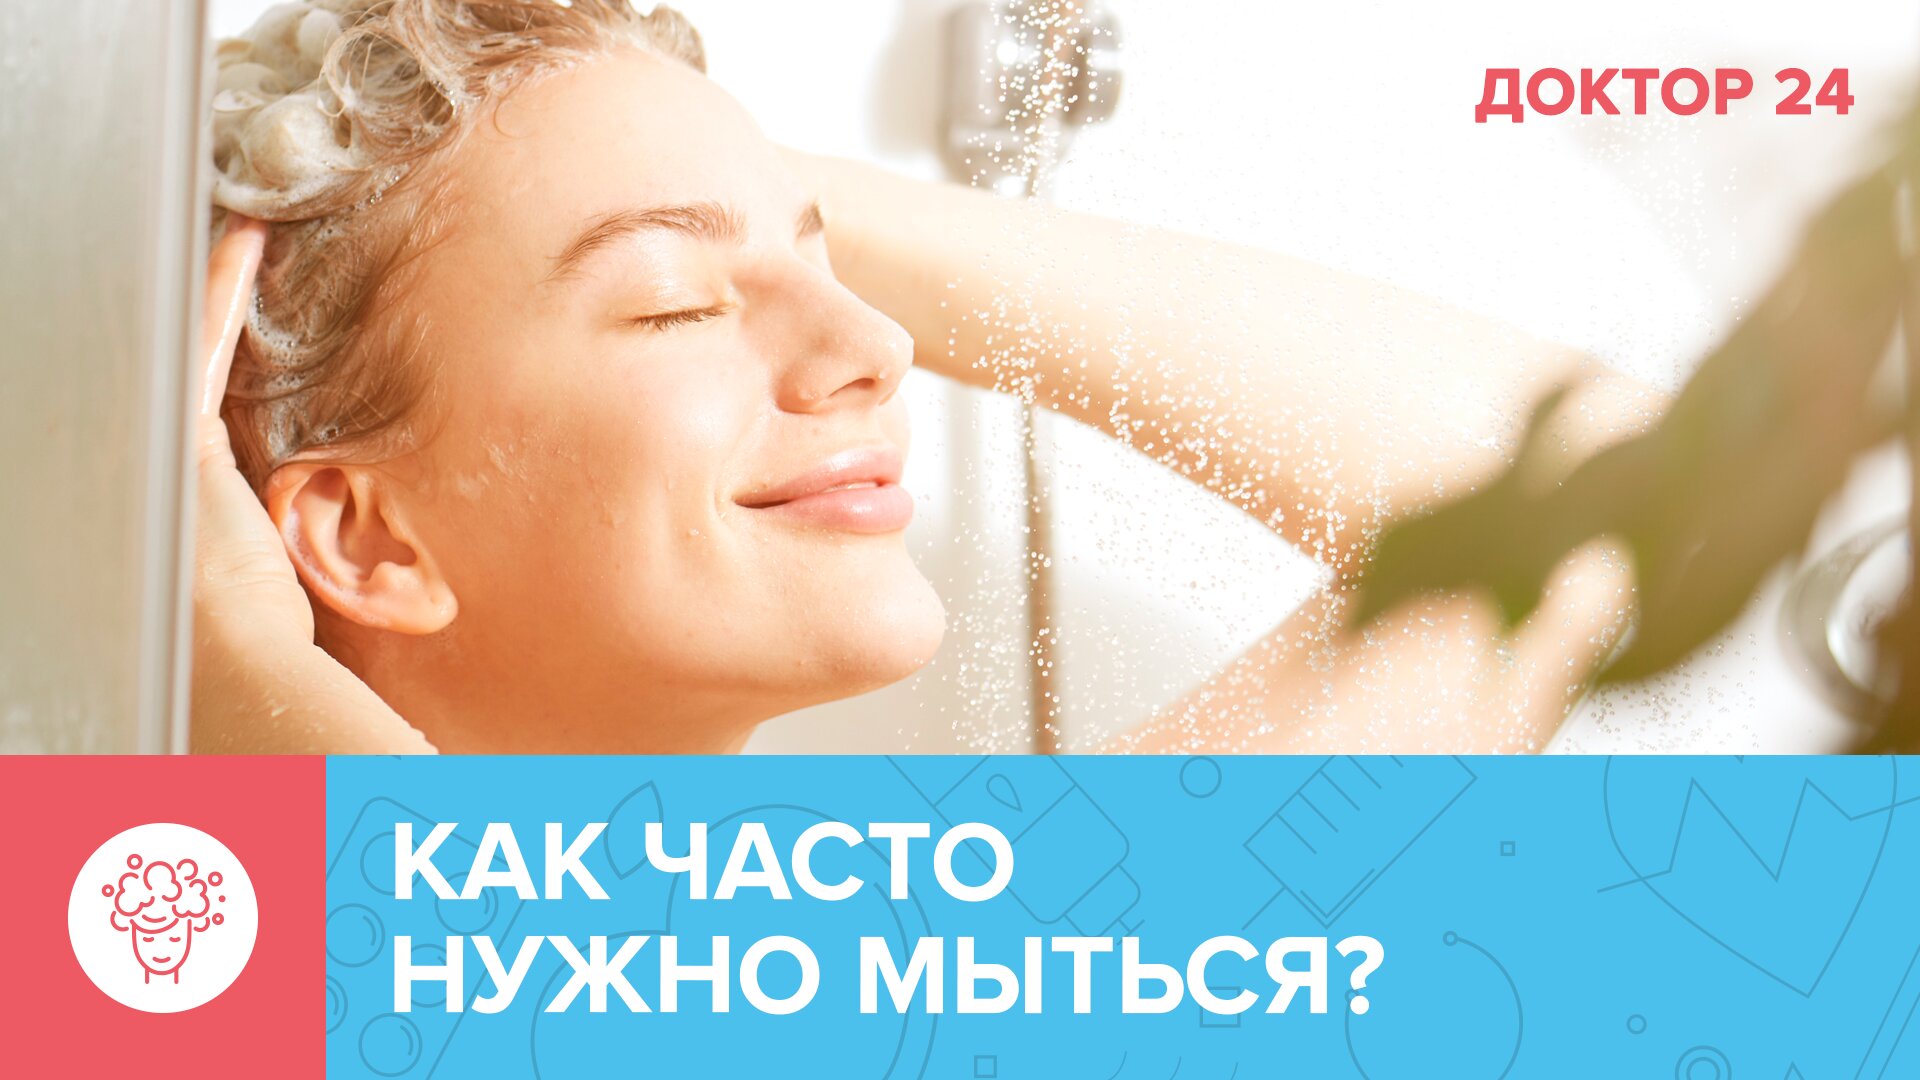 Как часто нужно ПРИНИМАТЬ ДУШ, и кому вредно мыться каждый день? | Доктор 24